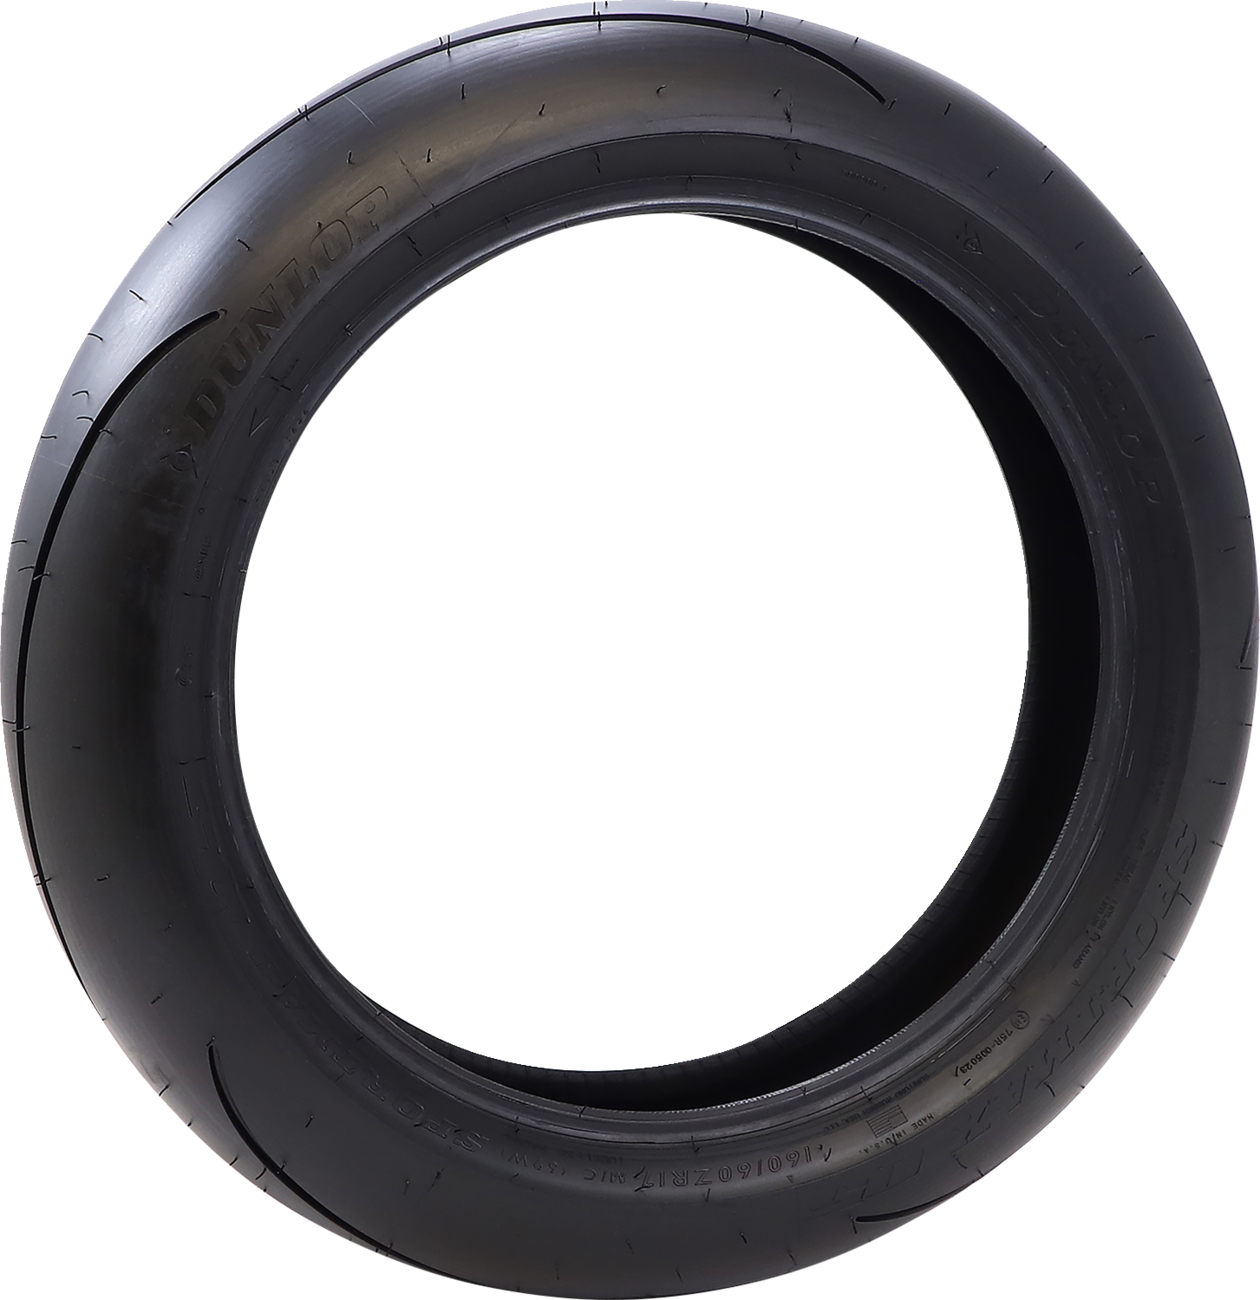 DUNLOP Tire - Sportmax® Q5 - Rear - 180/55ZR17 - (73W) 45247185